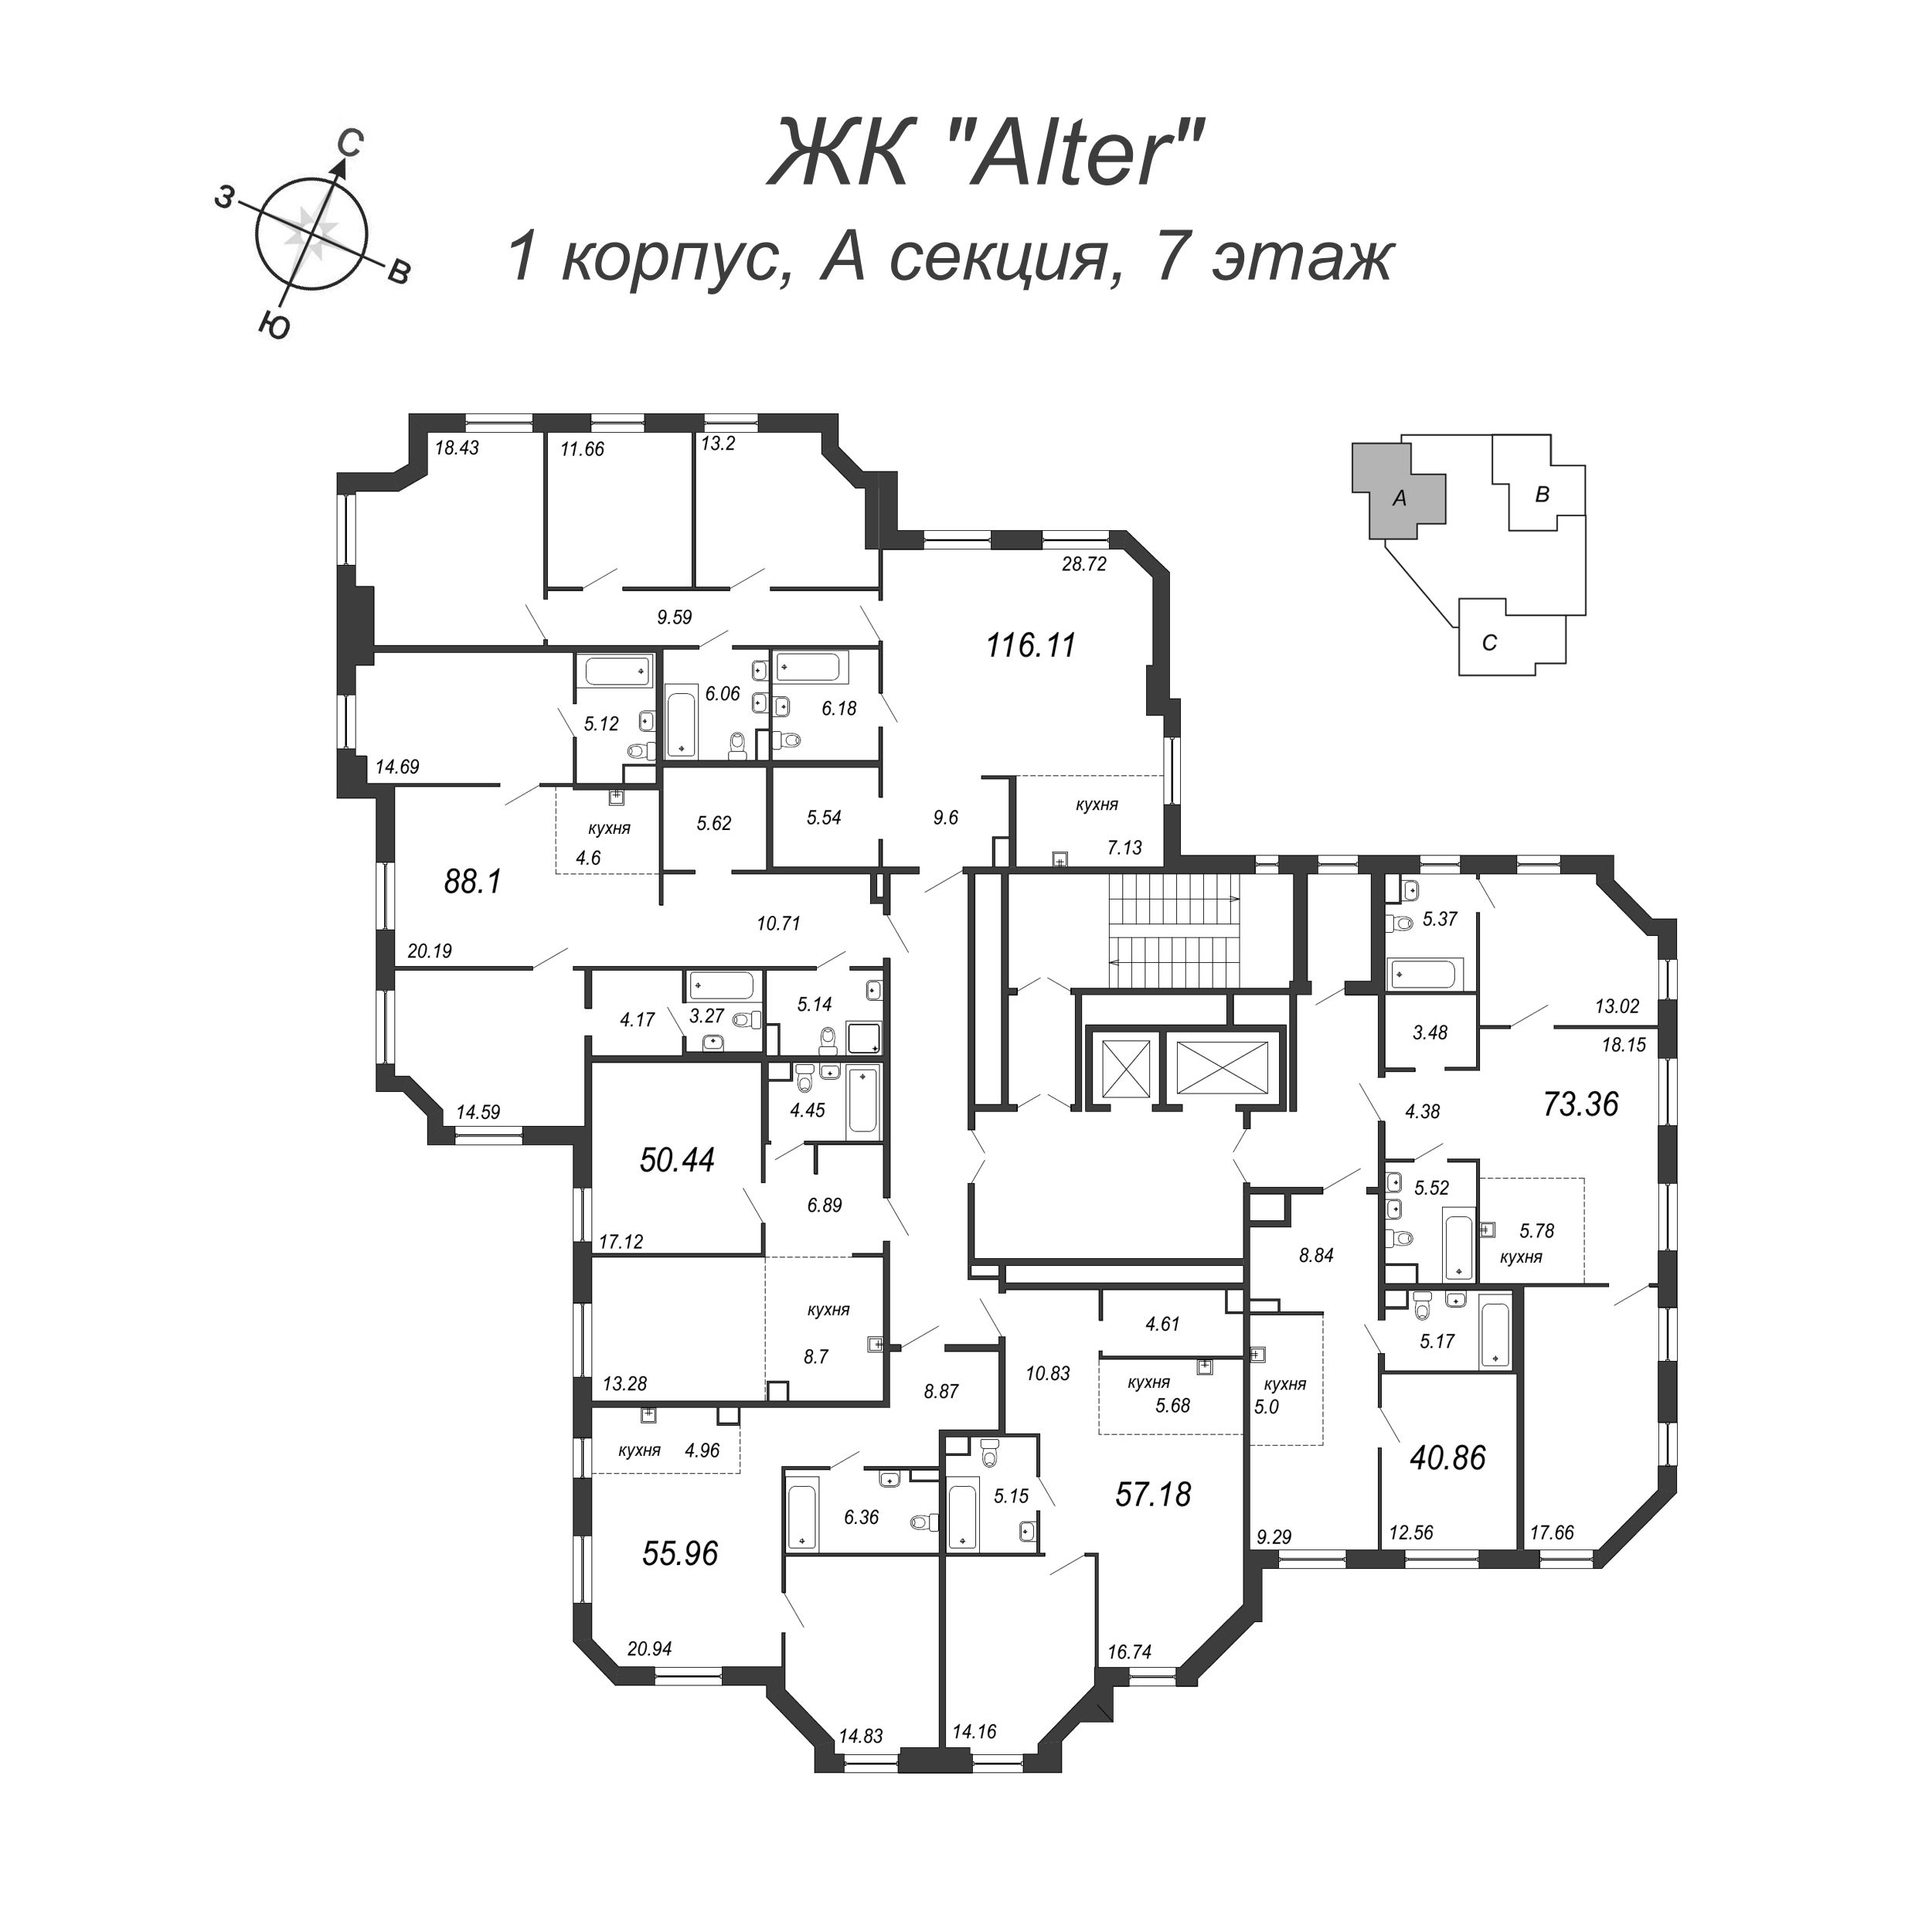 2-комнатная (Евро) квартира, 41 м² в ЖК "Alter" - планировка этажа